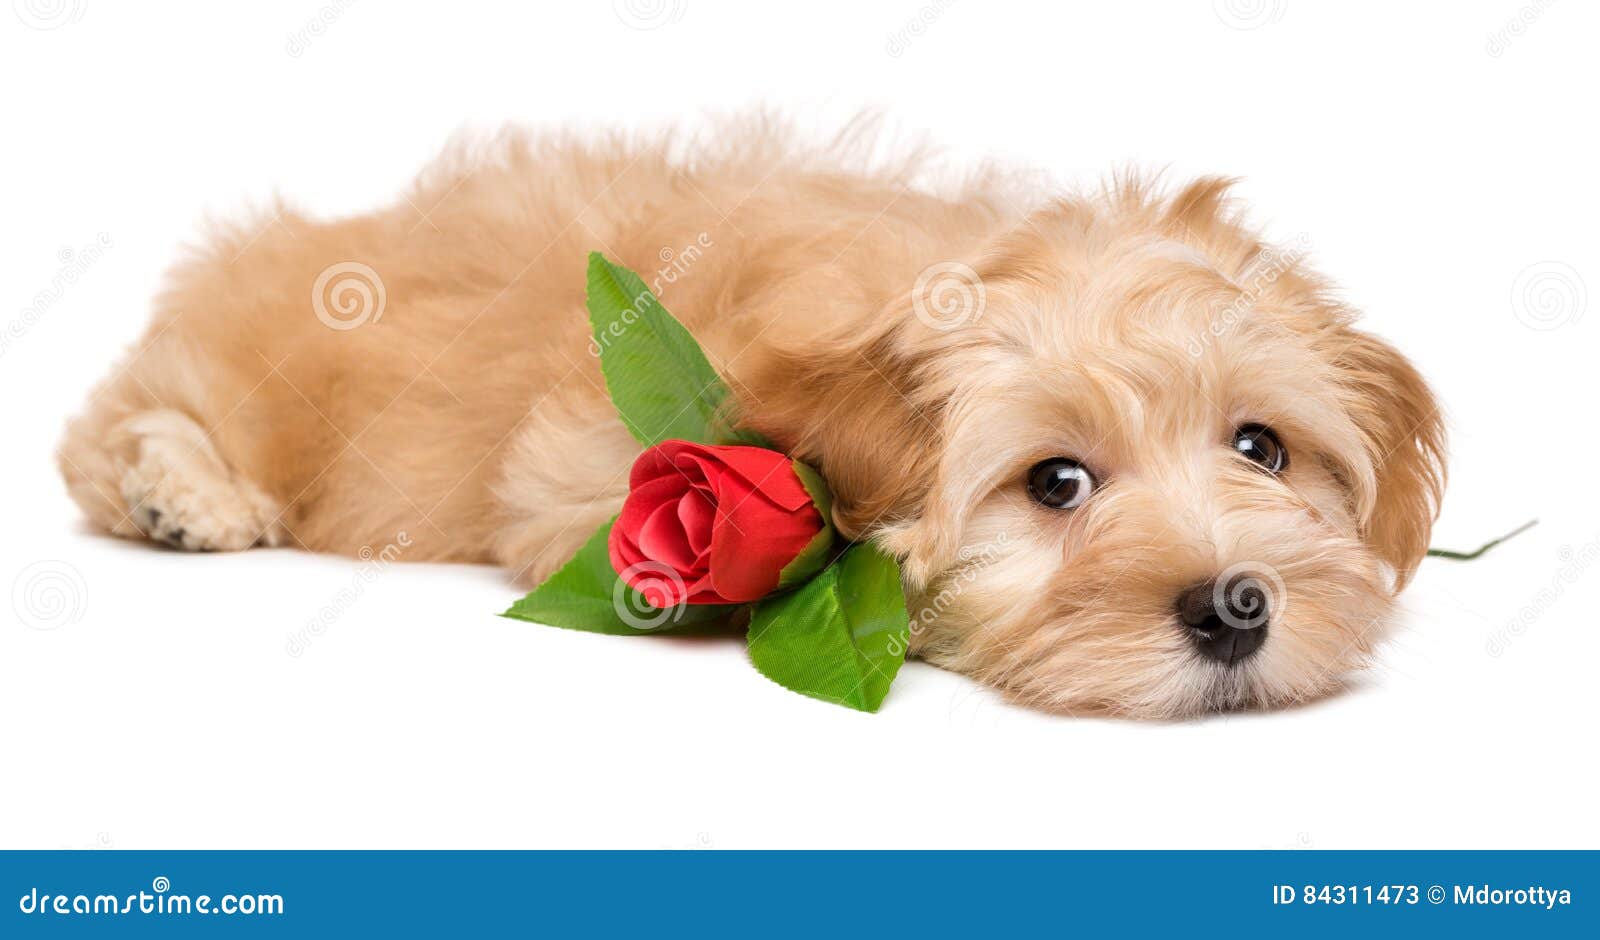 perro-de-perrito-havanese-lindo-que-miente-con-una-rosa-roja-84311473.jpg